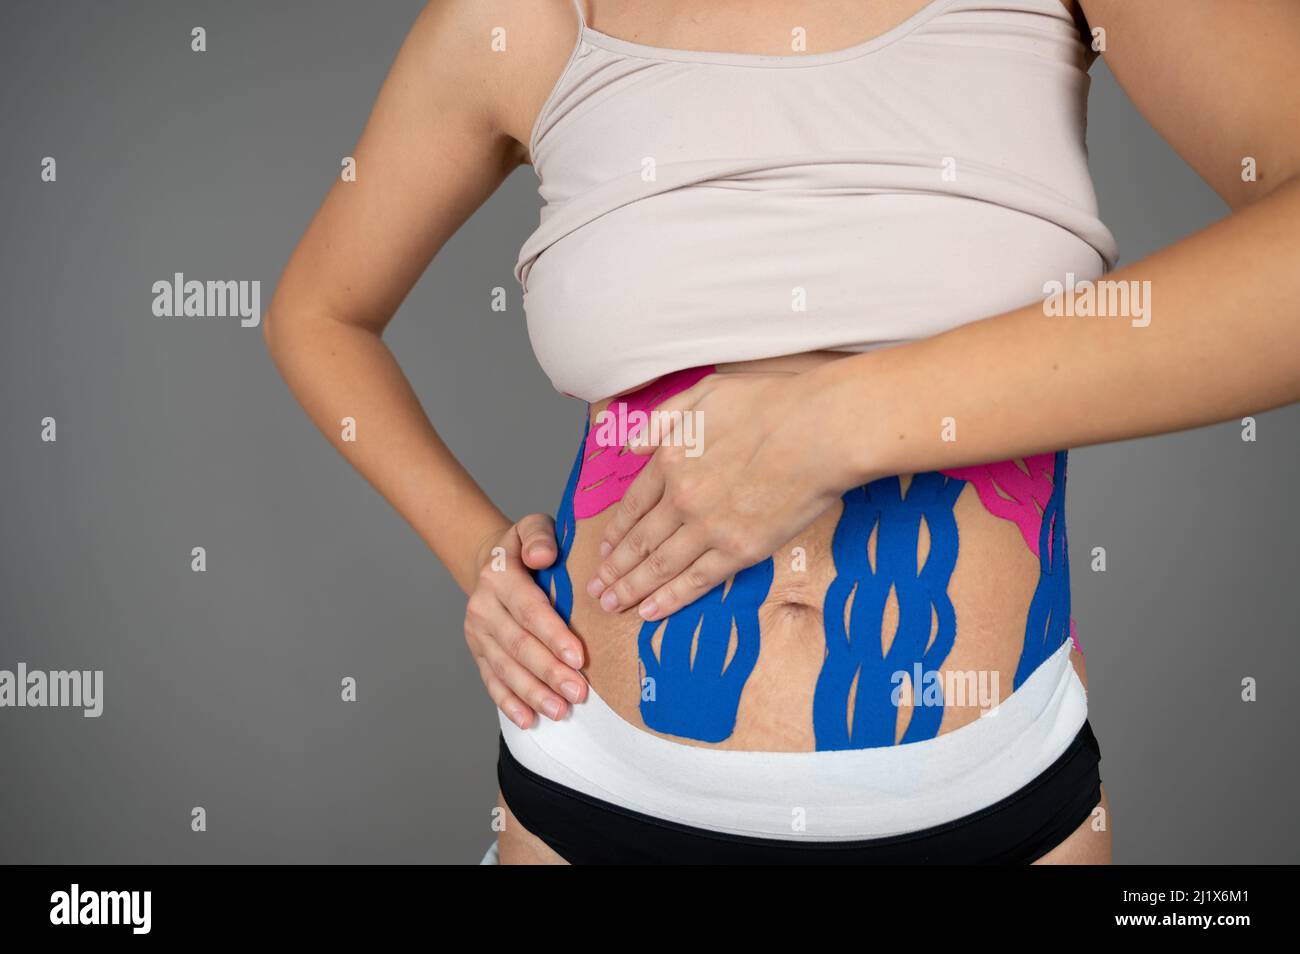 Una mujer joven muestra cintas de kinesio en su cuerpo. Concepto de tapado, esguinces, lesiones y dolor muscular de Kinesio Foto de stock